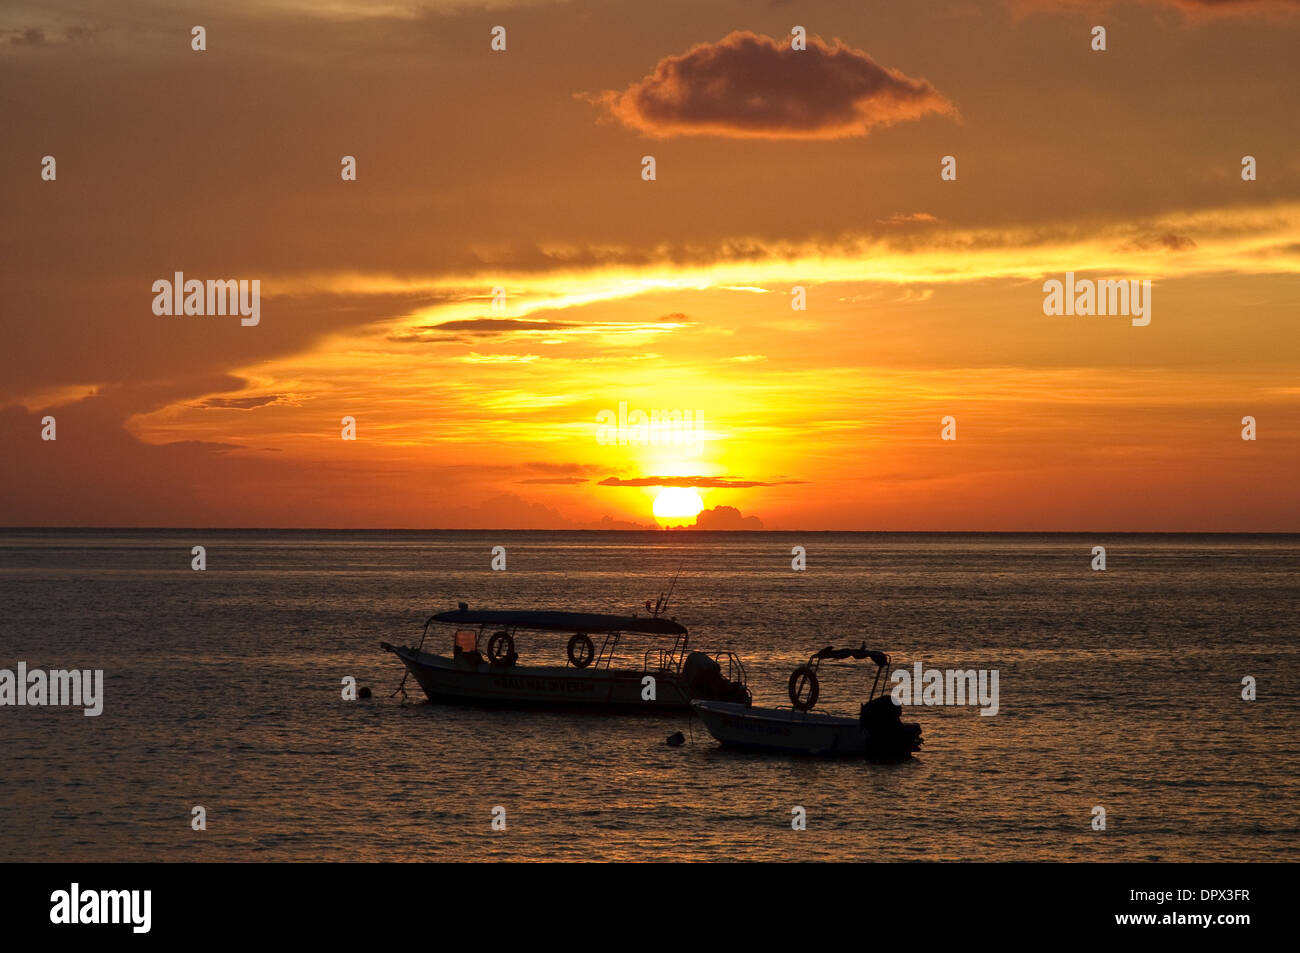 Motorboat, Pulau Tioman Island, Malaysia, Asia Stock Photo